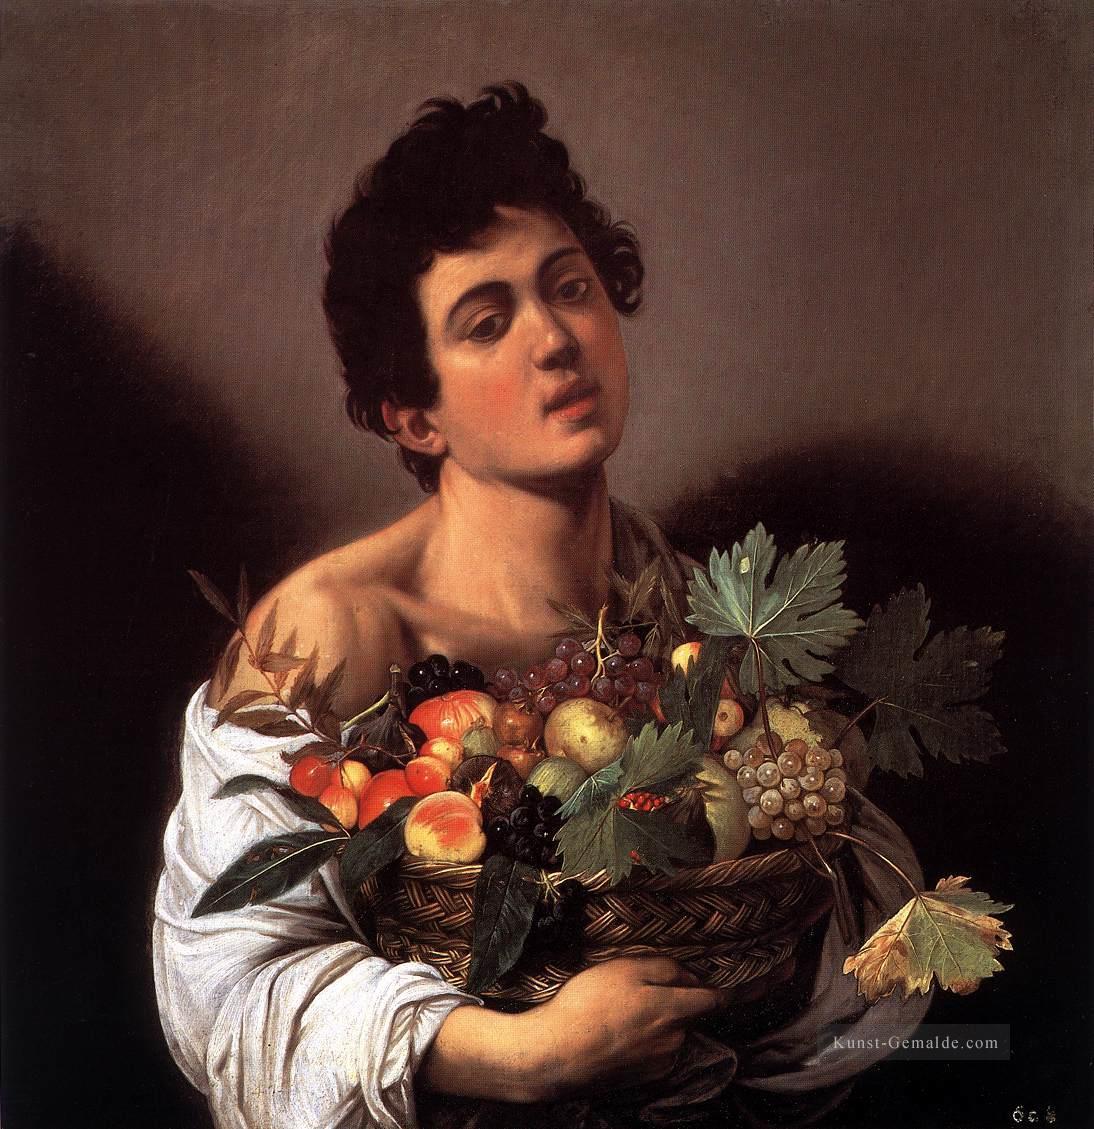 Junge mit einem Korb der Frucht Caravaggio Ölgemälde